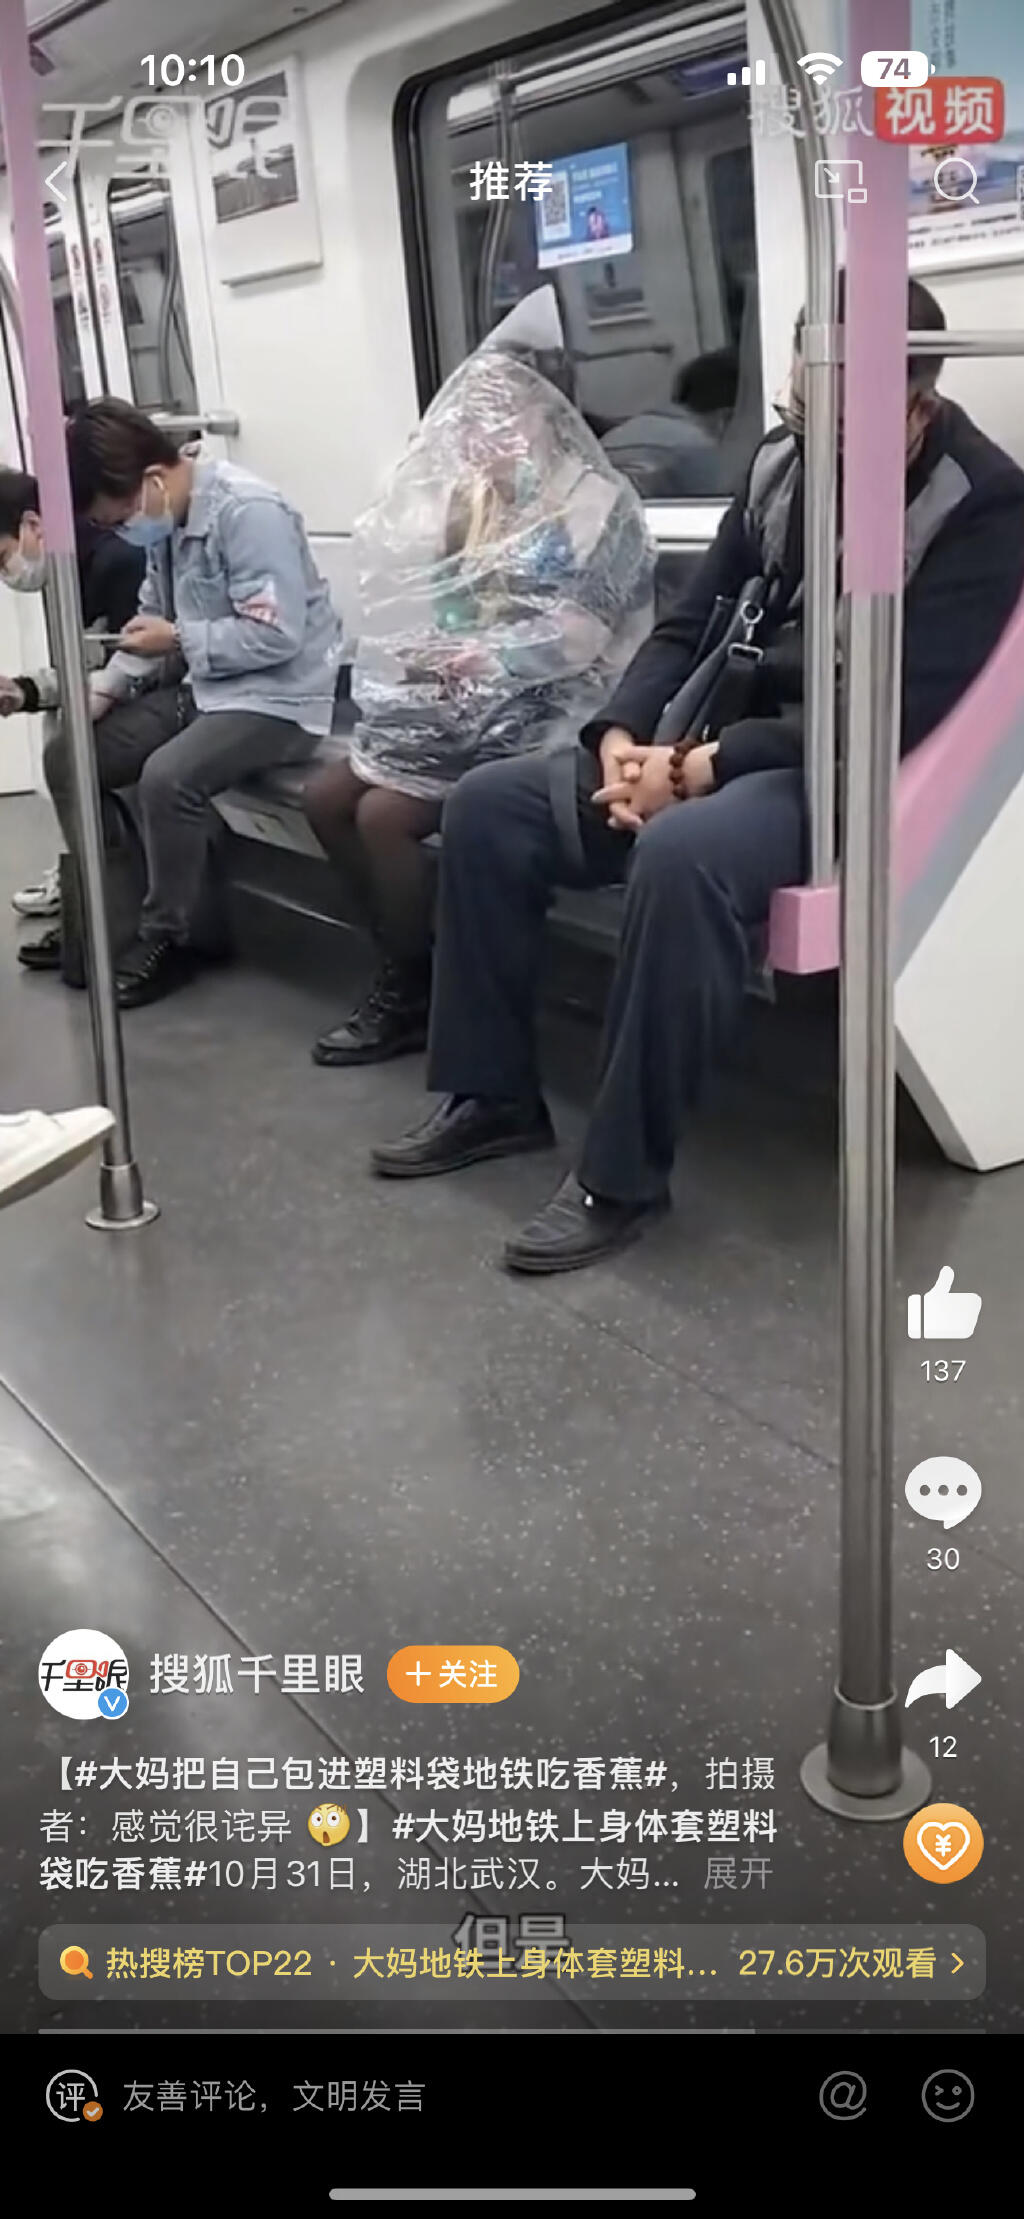 大妈地铁上身体套塑料袋吃香蕉 大妈地铁怒怼 大妈地铁跳舞